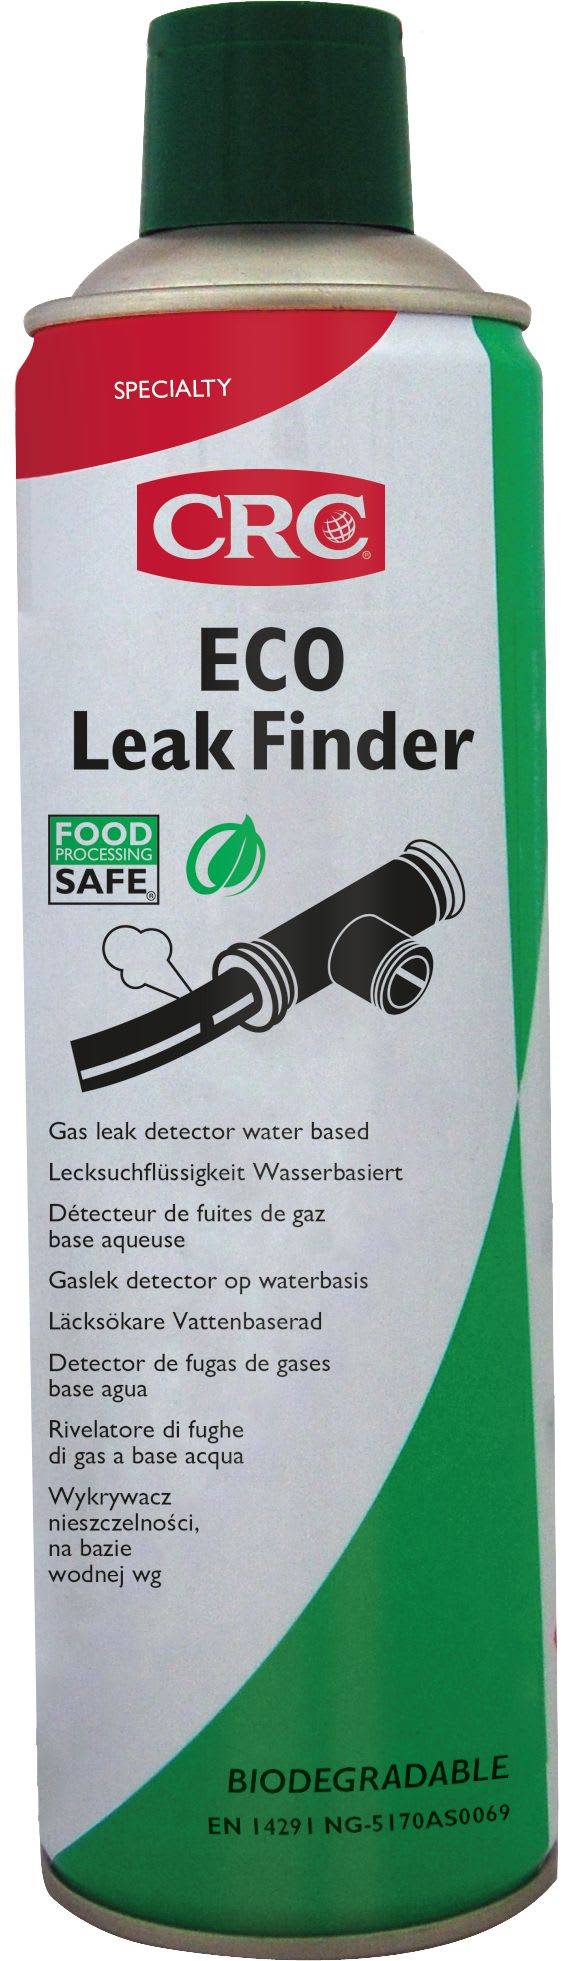 Kf - ECO Leak Finder FPS 5 L